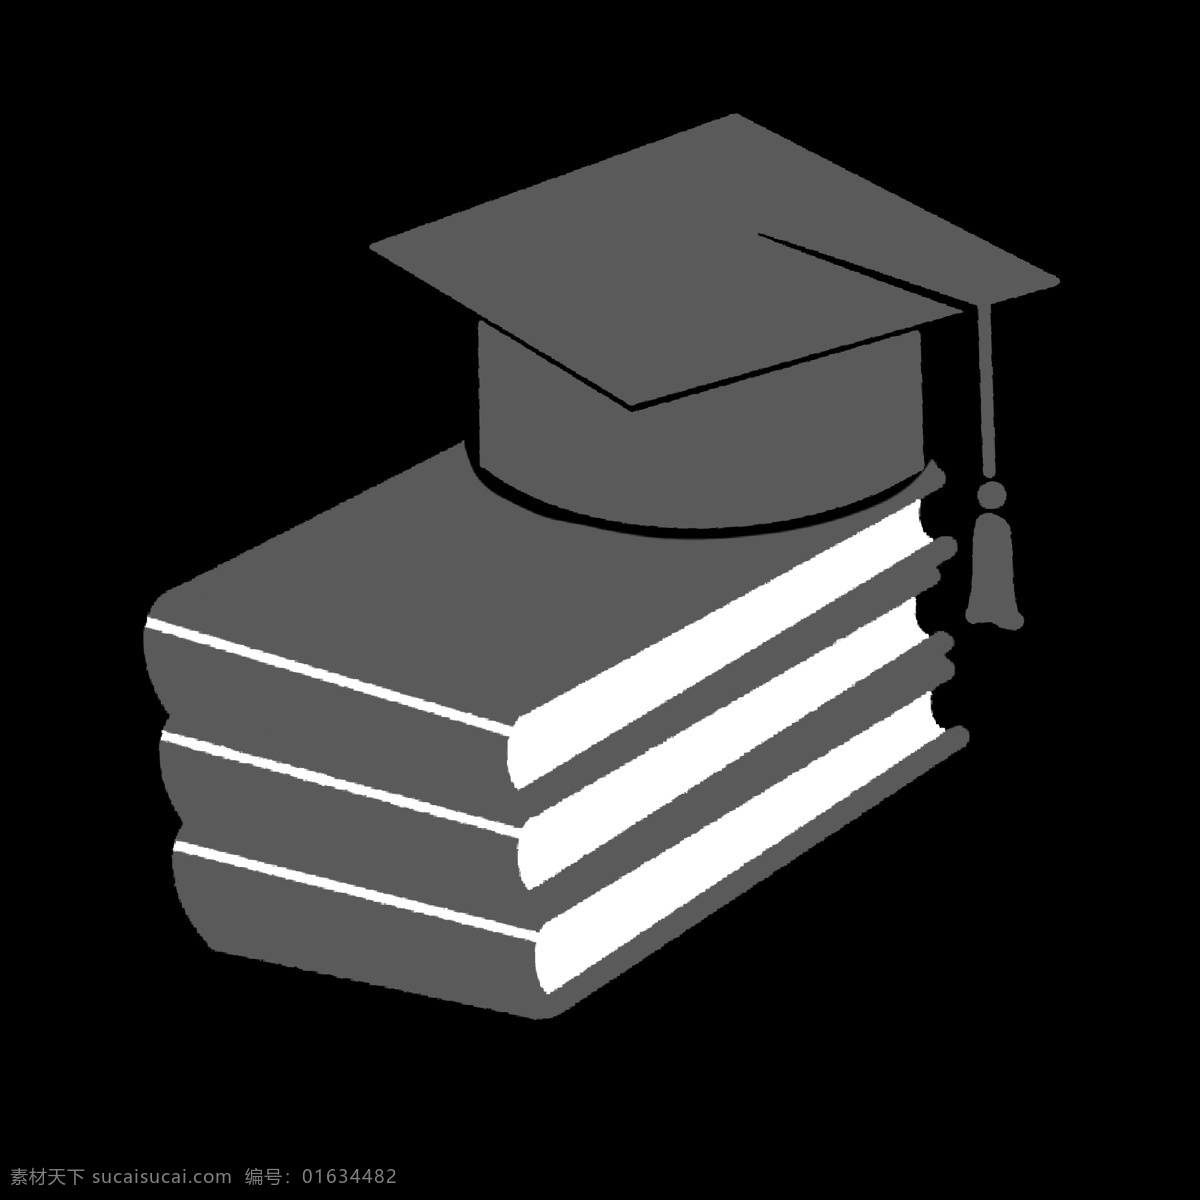 灰色 书籍 博士帽 简历 图标 受教育程度 学历 文化程度 知识水平 简洁 抽象 卡通 ppt使用 名片使用 简历表专用